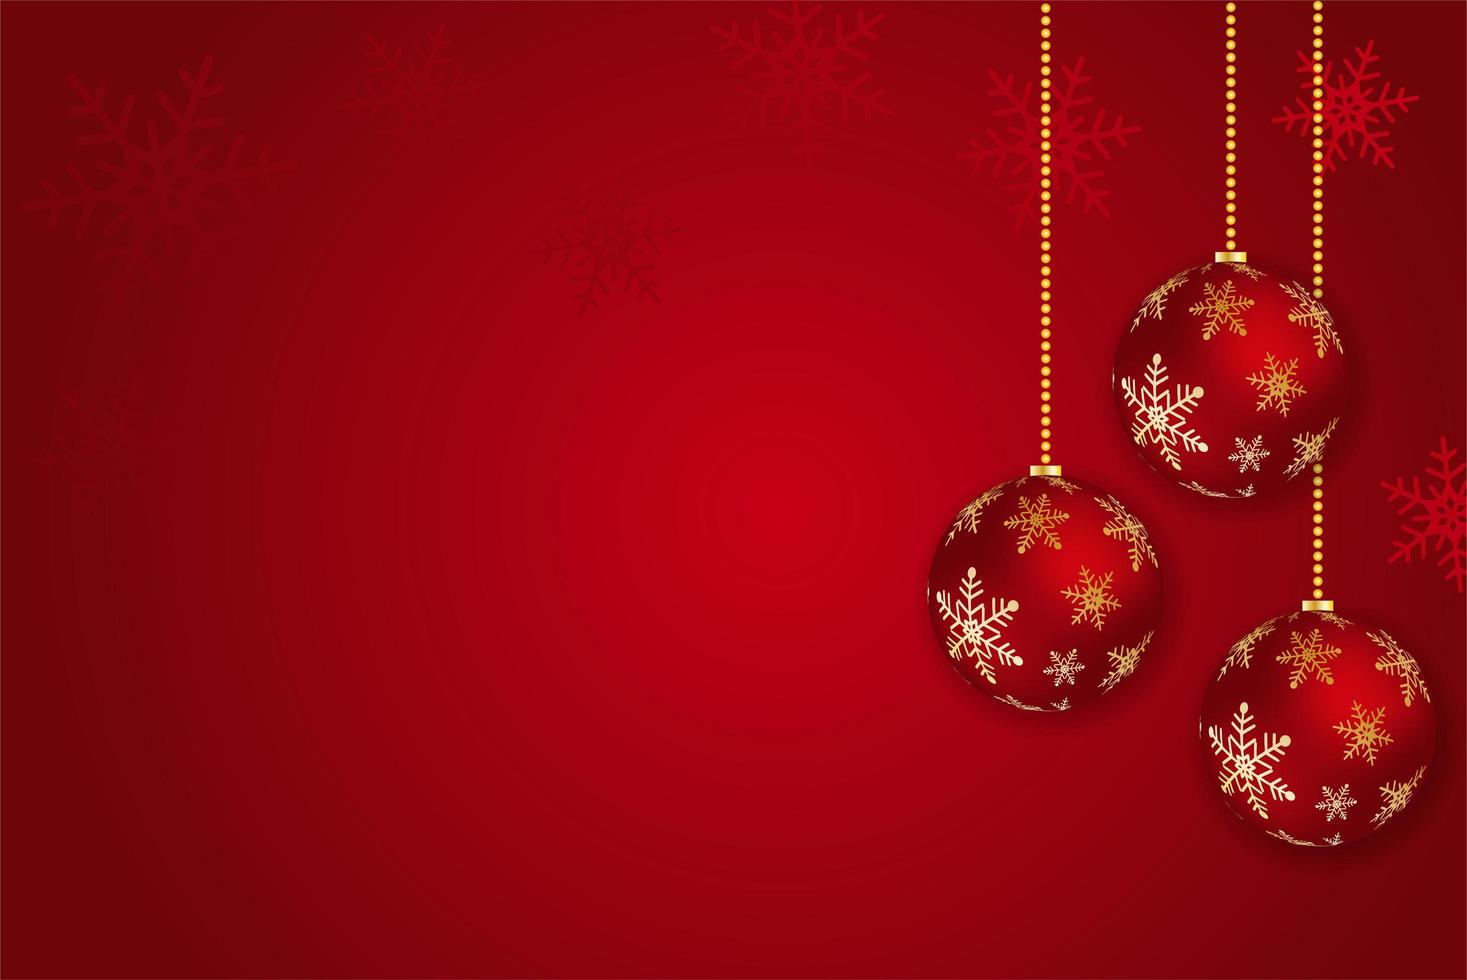 Weihnachtshintergrund mit glänzender goldener Schneeflocke, Stern und Ball. frohe weihnachten kartenillustration auf rotem hintergrund. vektor